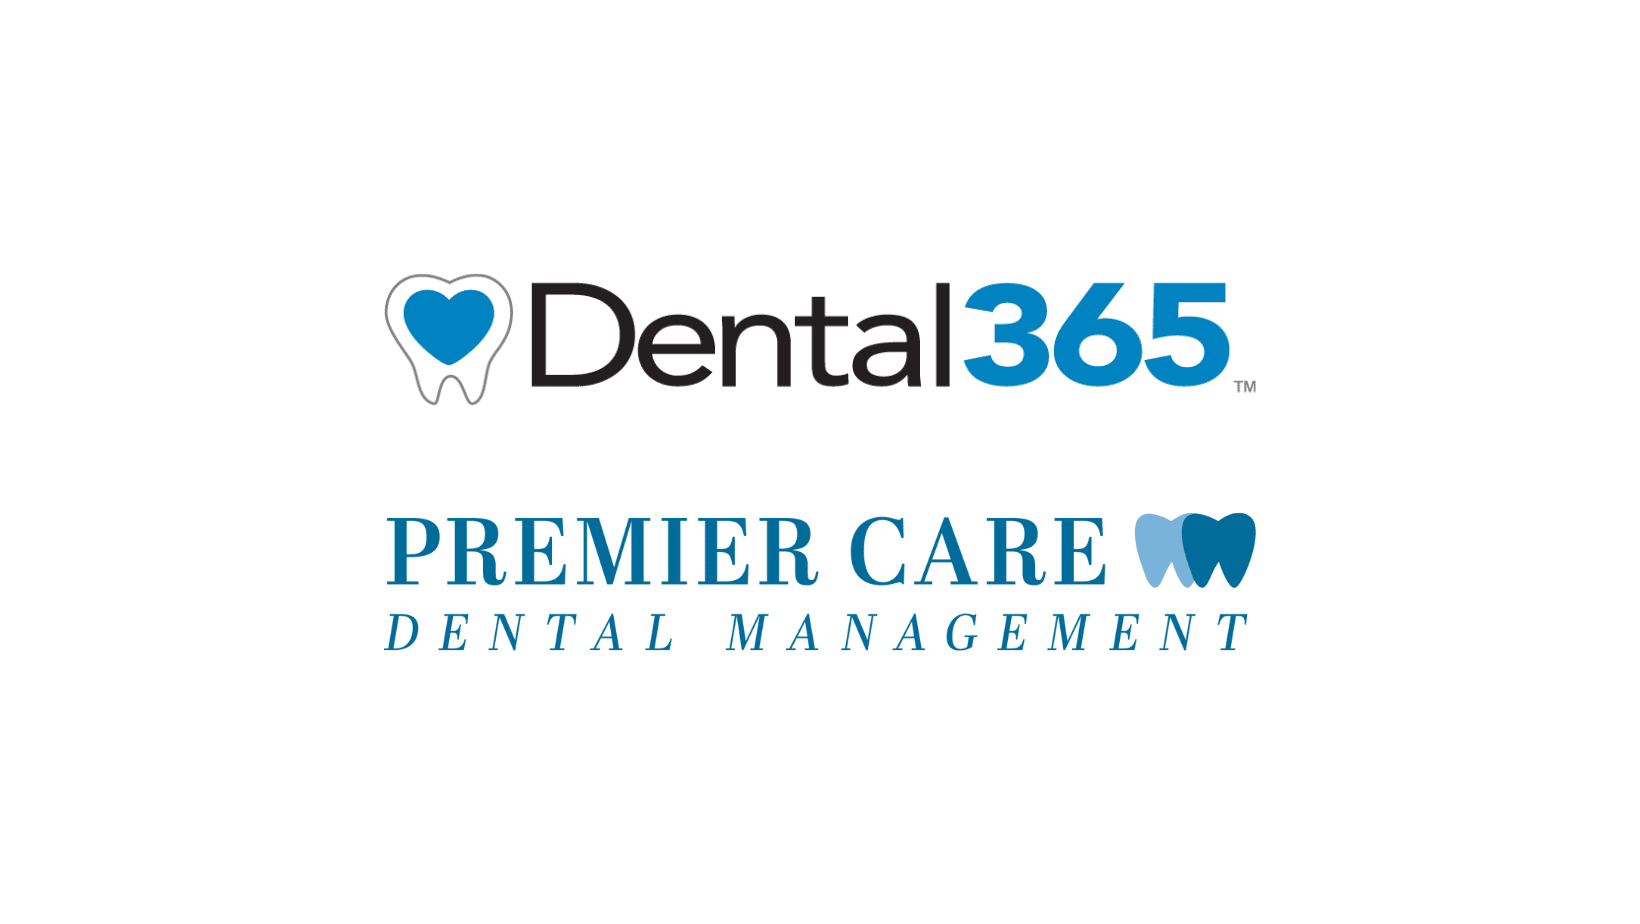 Dental365 & Premier Care Dental Management to Host Dental Symposium